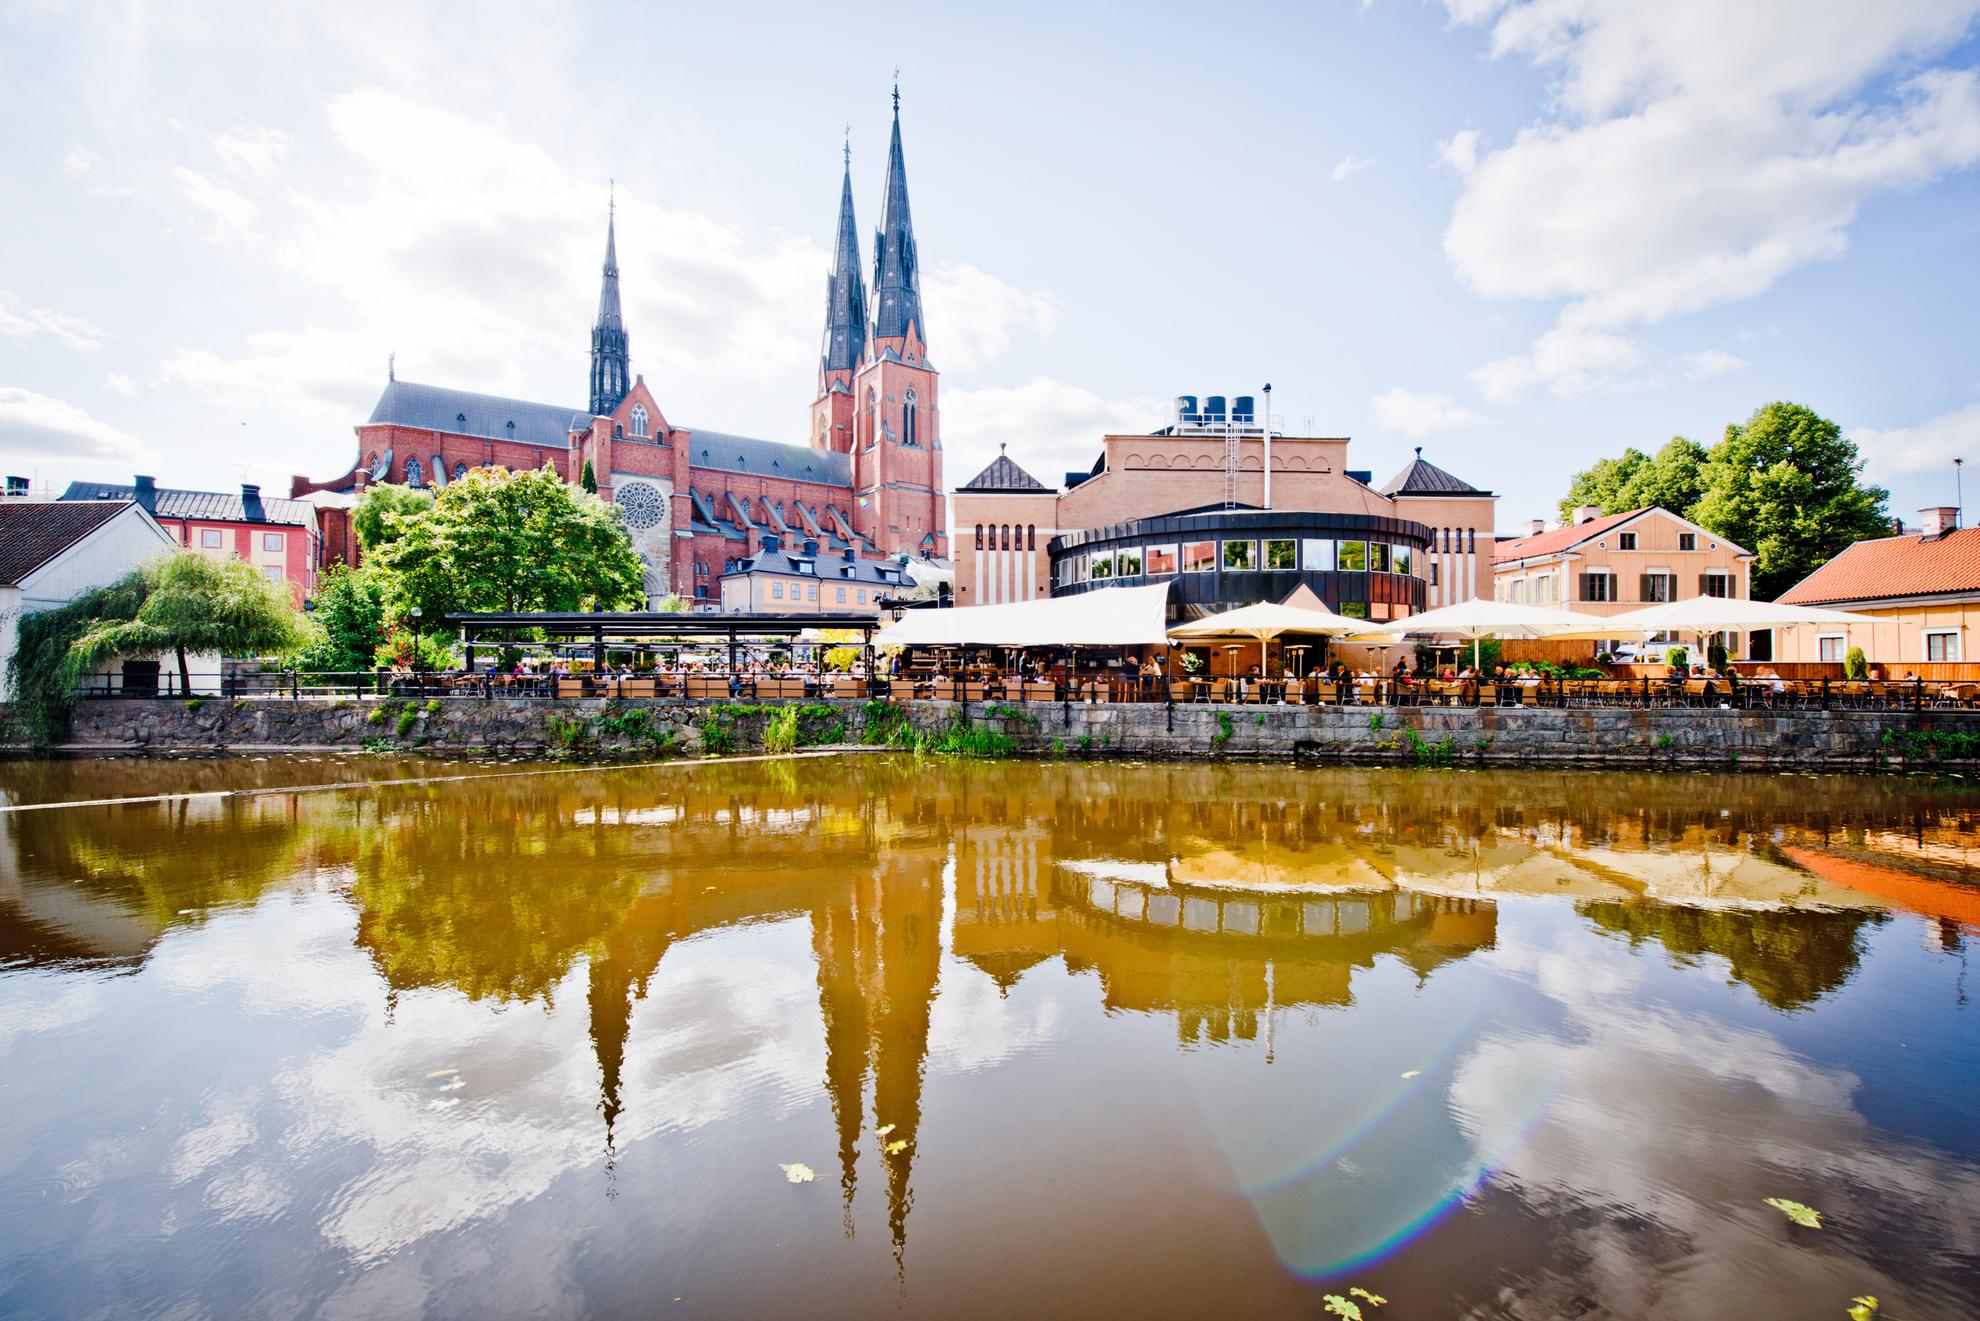 Der Dom von Uppsala ragt im Hintergrund in den Himmel. Davor stehen andere Gebäude und eine Außenterrasse mit vielen Stühlen. Im Wasser des Fluss Fyris, spiegeln sich die Gebäude der Stadt.